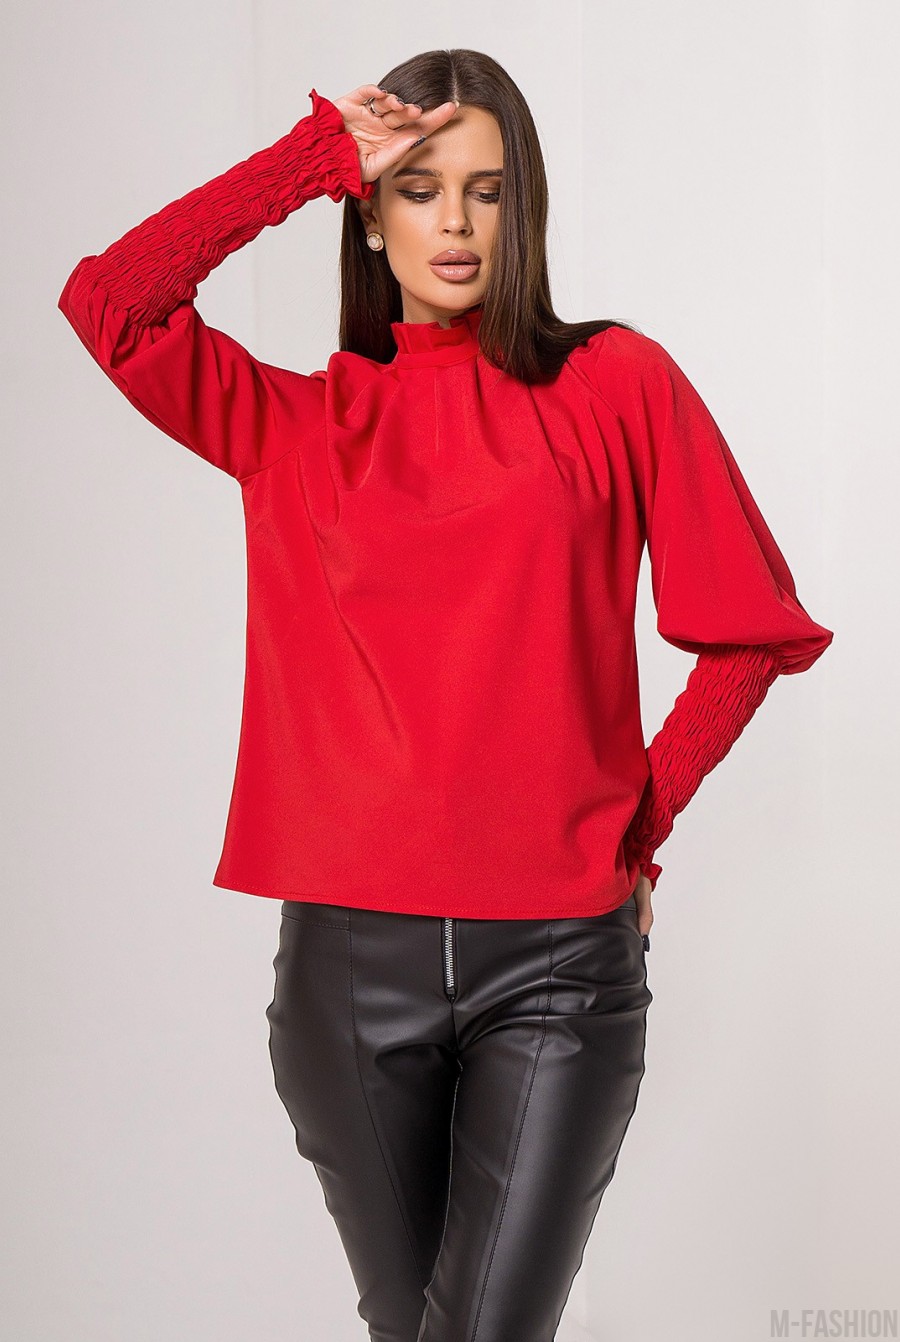 Красная блуза с жаткой и рюшами - Фото 1